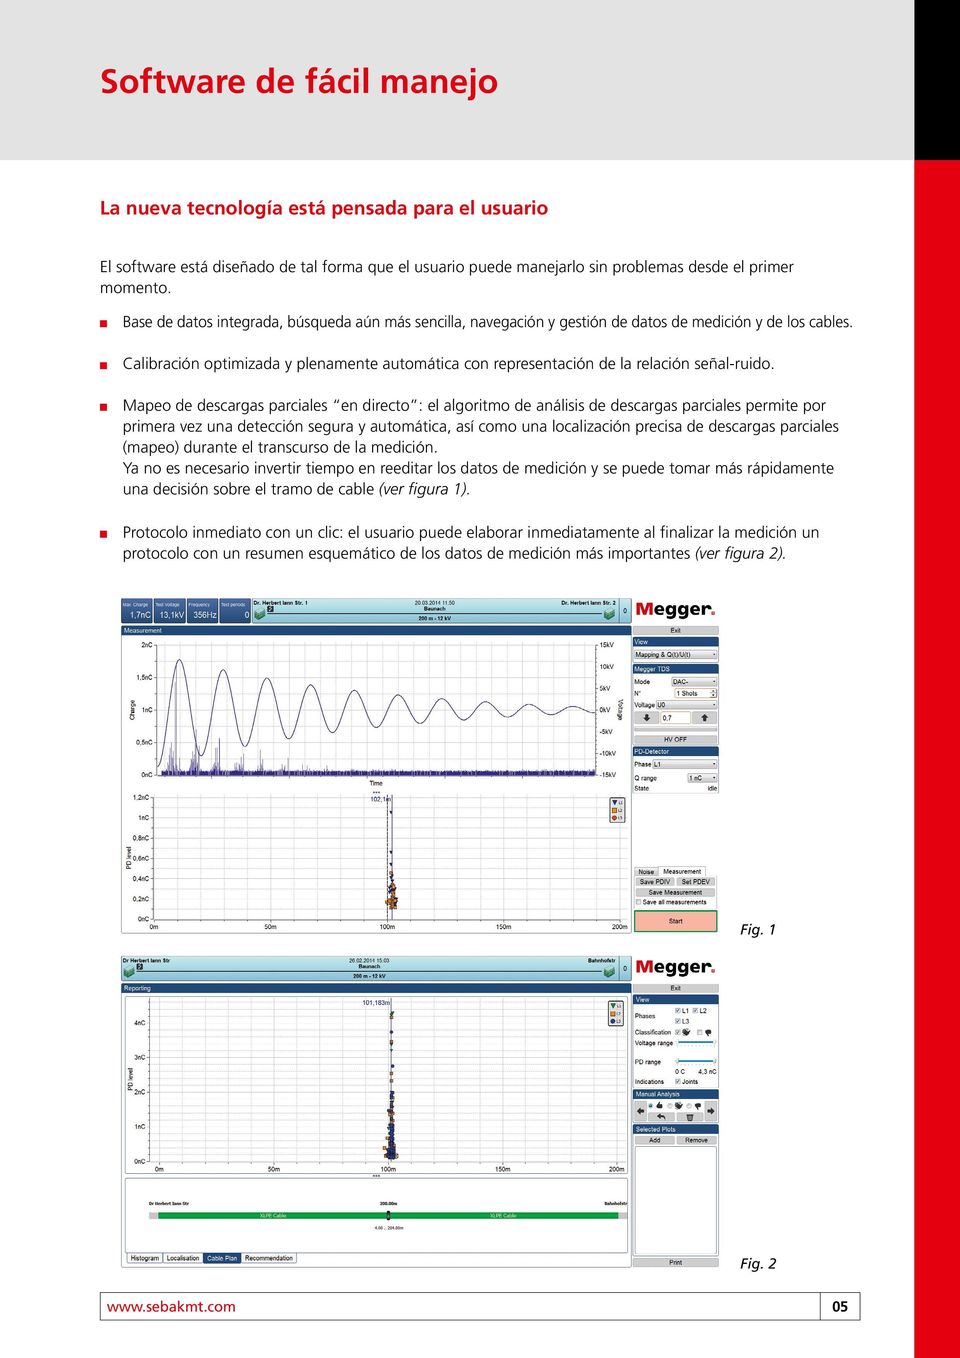 Calibración optimizada y plenamente automática con representación de la relación señal-ruido.